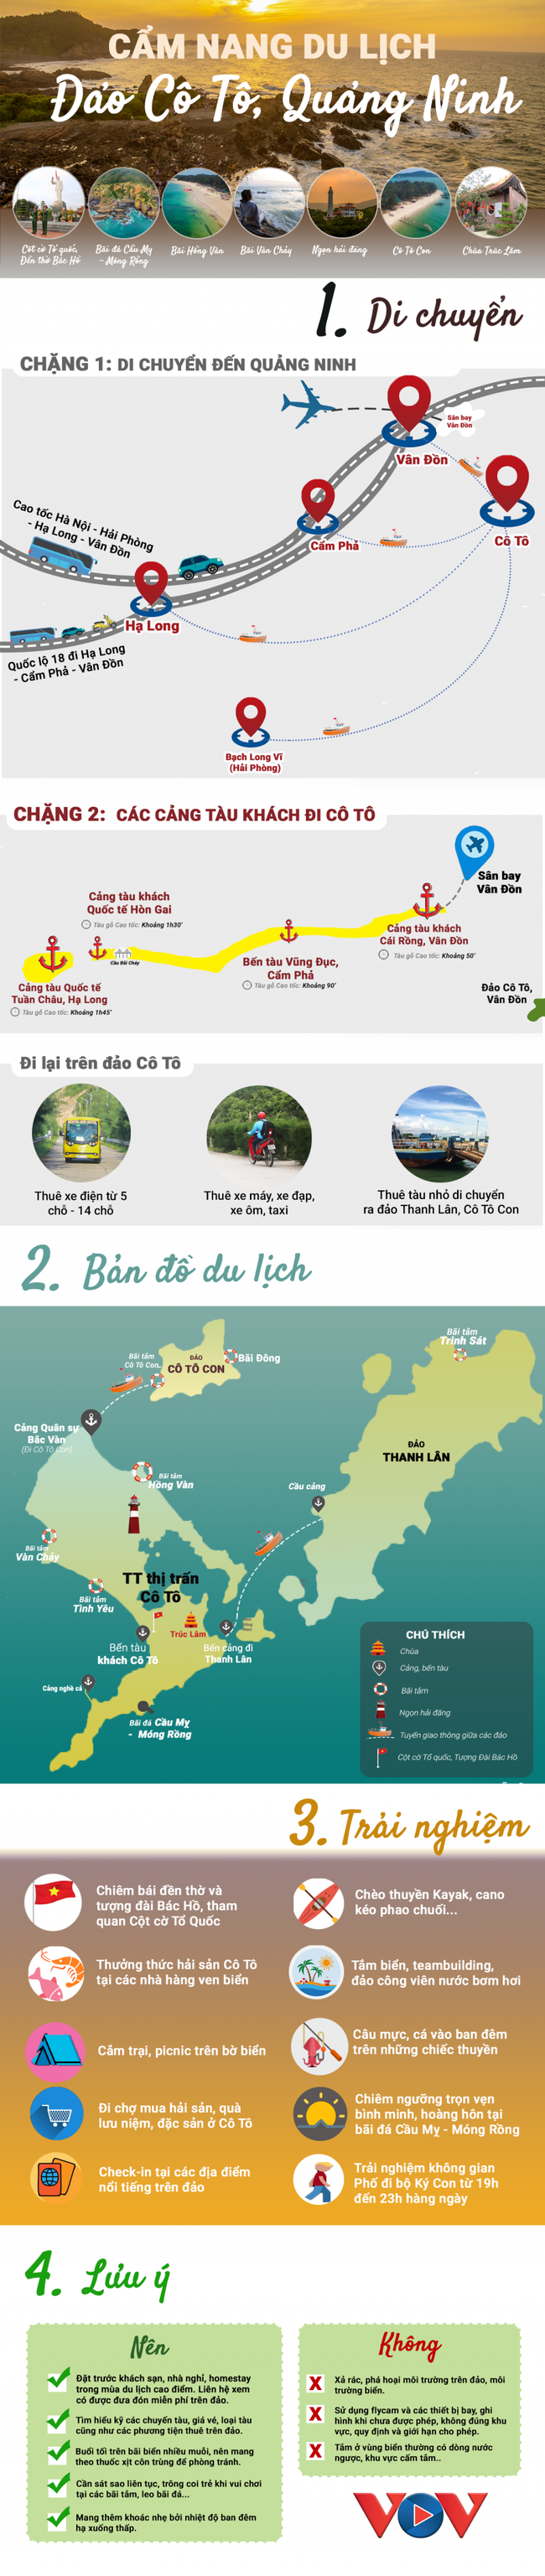 Cẩm nang du lịch đảo Cô Tô, Quảng Ninh - Ảnh 1.